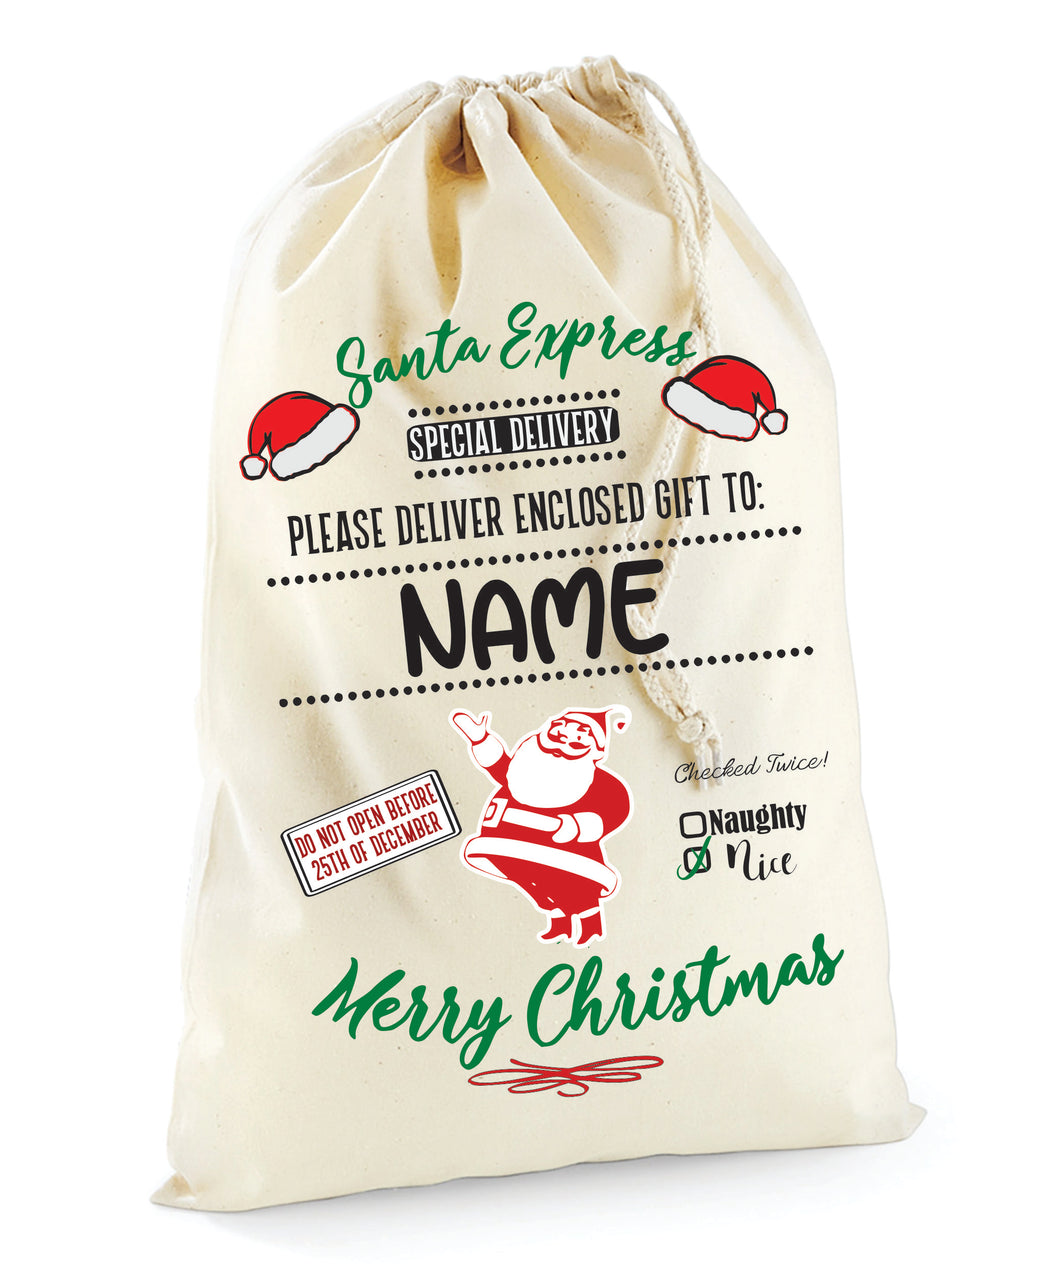 Santa / Gift Sack (Natural Santa Express Design)